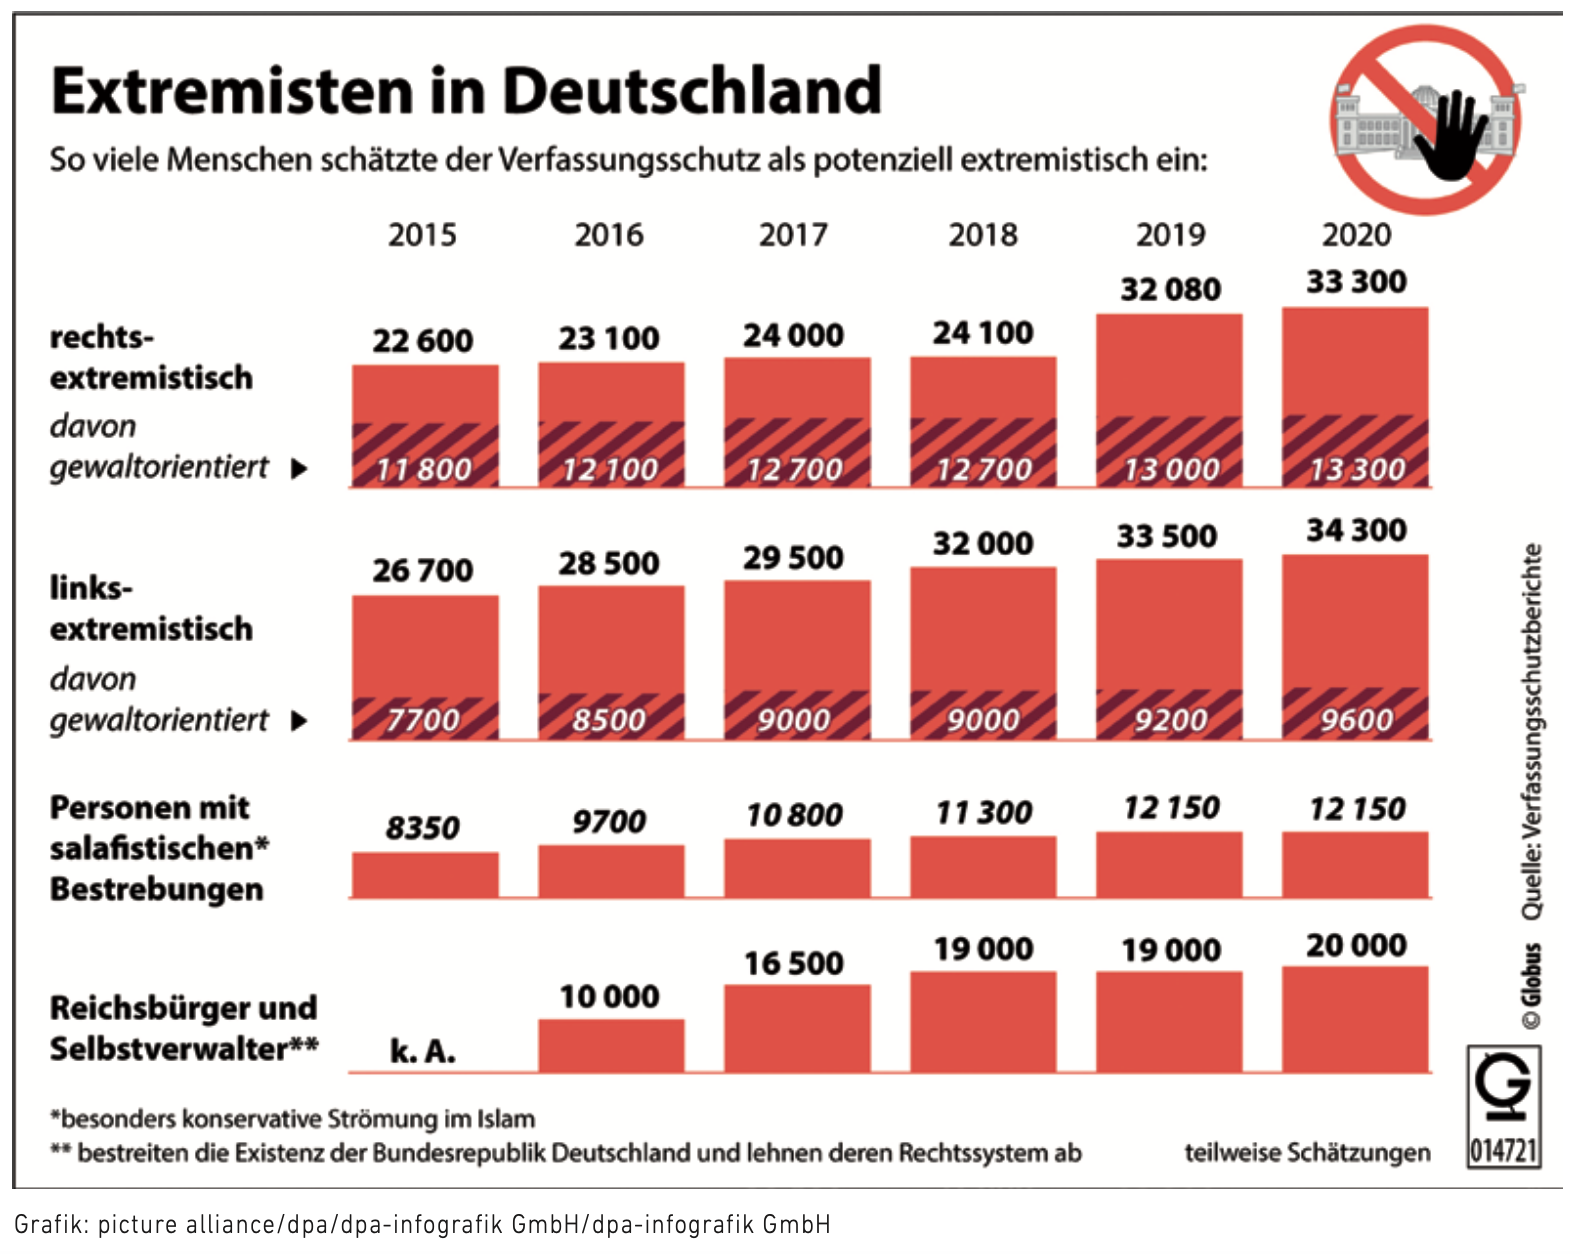 Extremisten in Deutschland